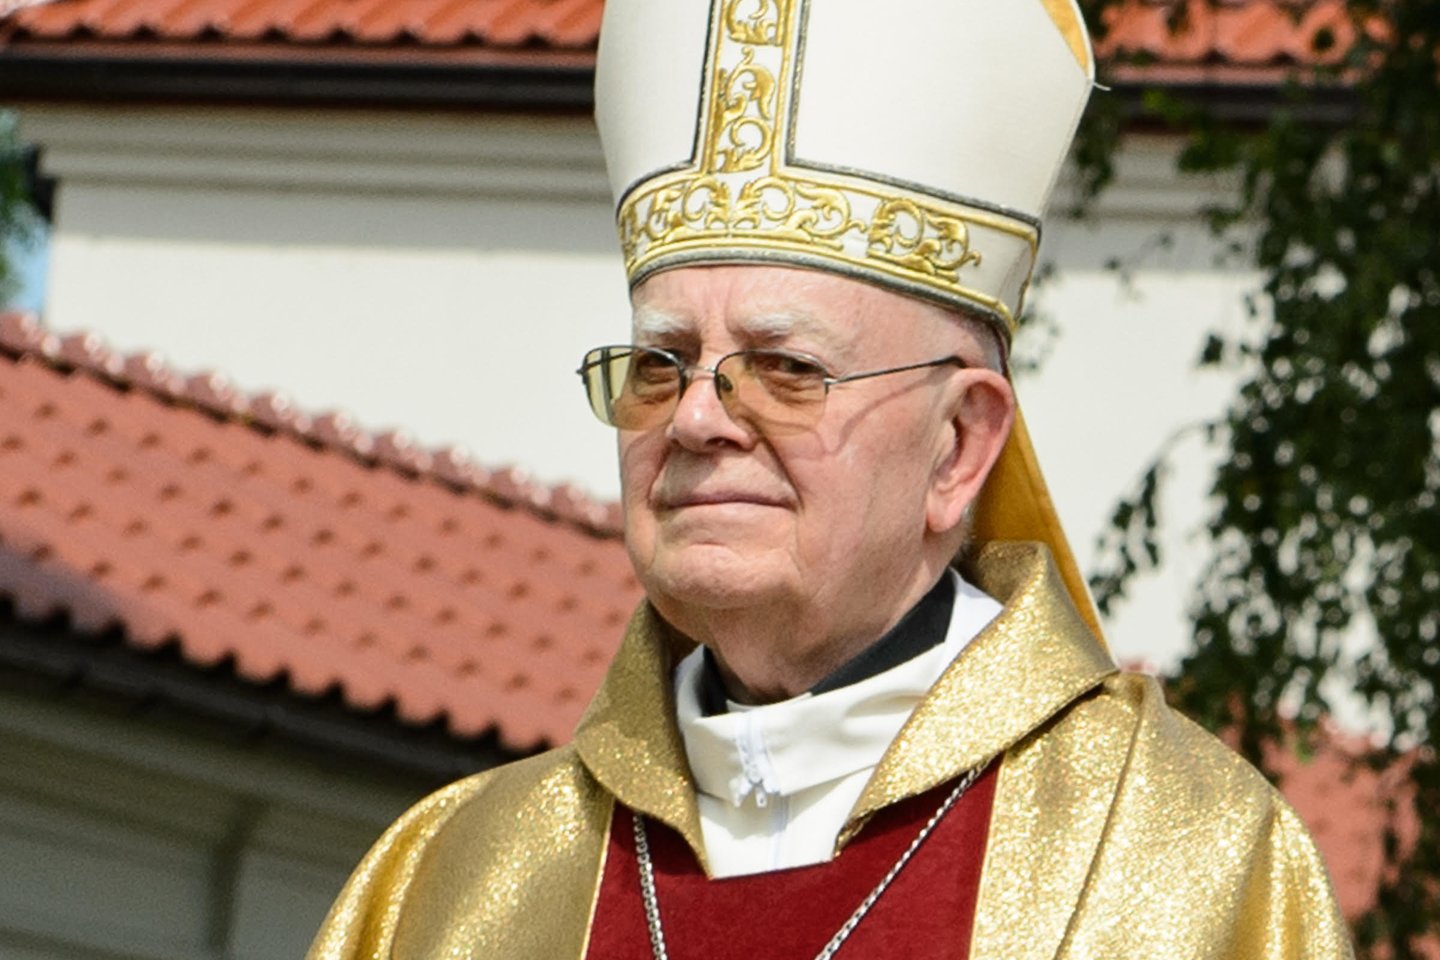  Mirė buvęs Vilkaviškio vyskupas J. Žemaitis.